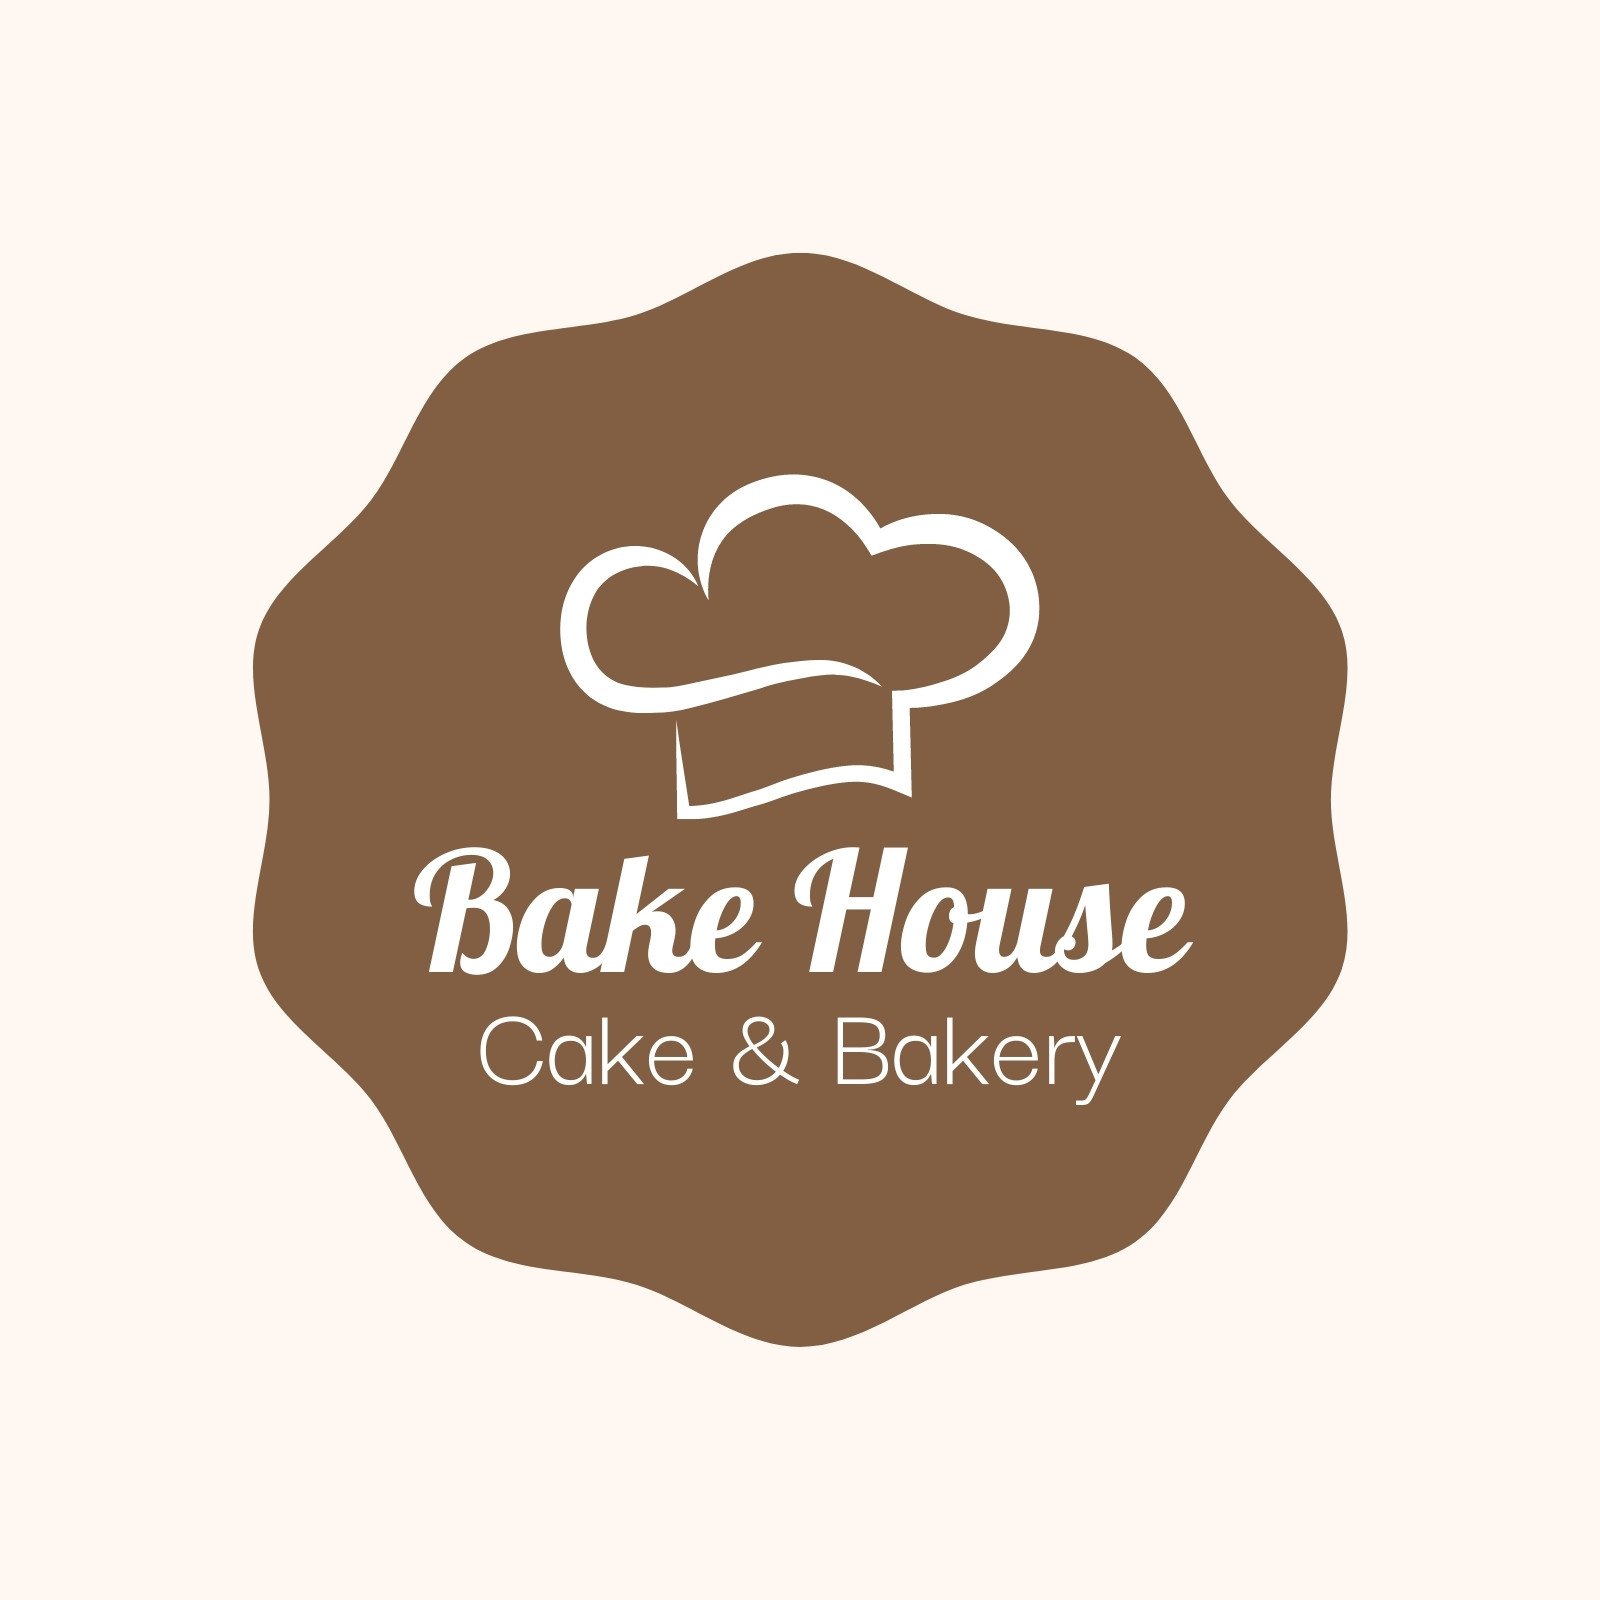 cake bakery logo design ilustration - Stock Image - Everypixel